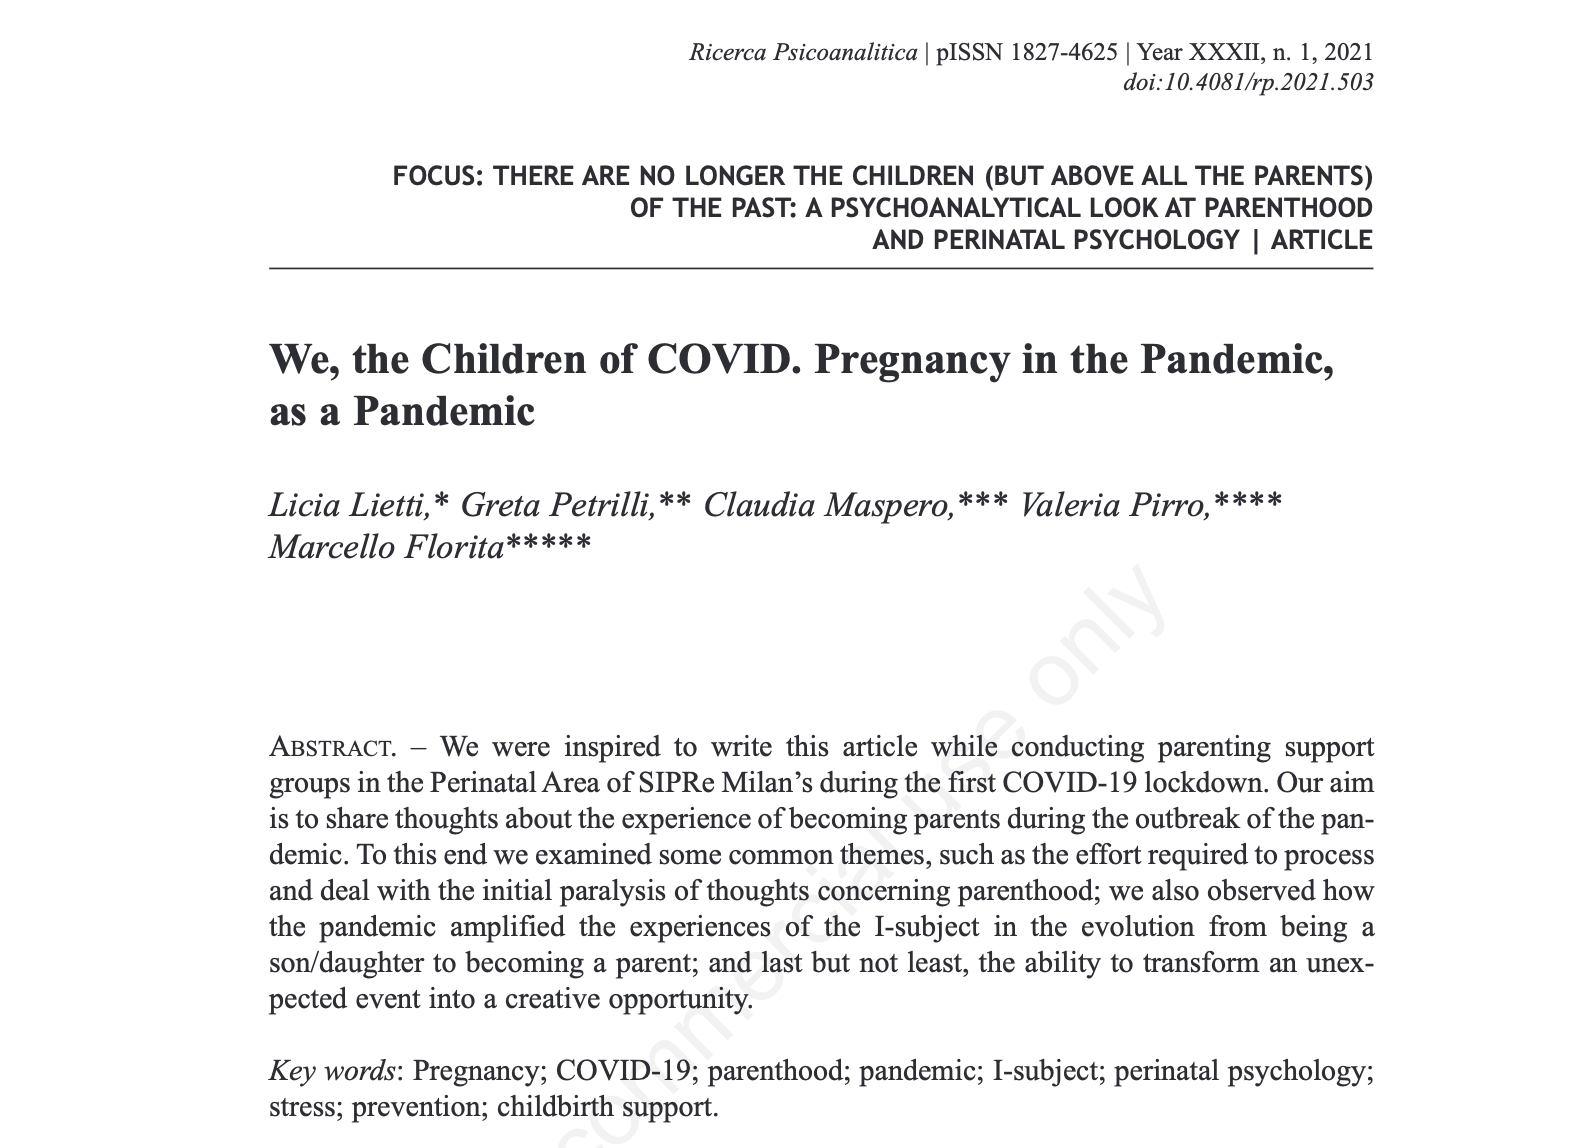 Pregnany and COVID. Born in Pandemia